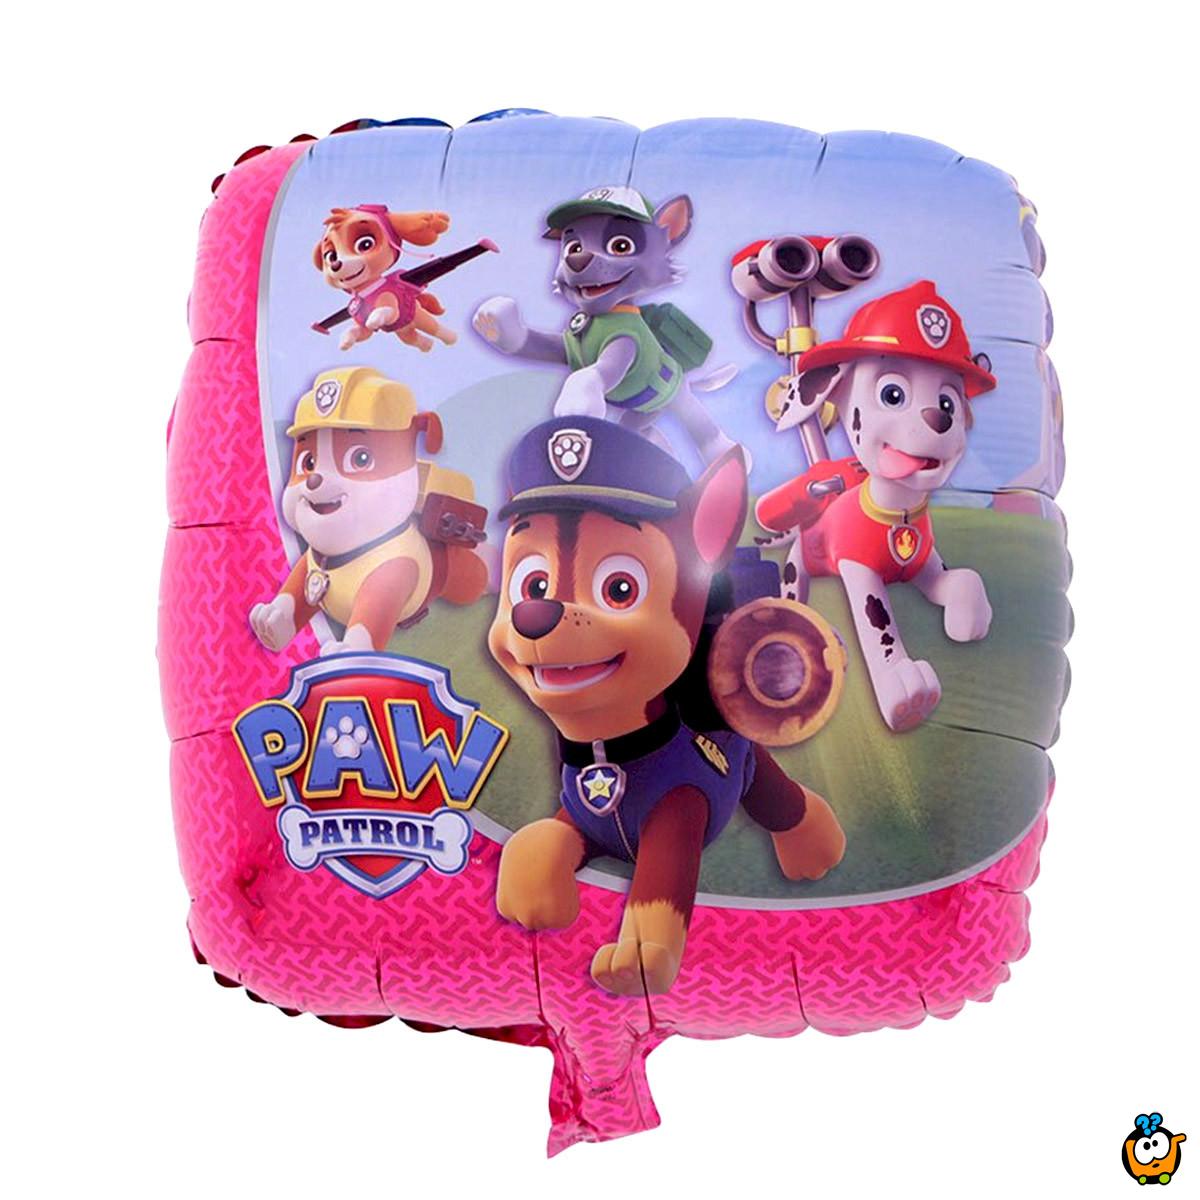 Patrolne Šape balon za dečije rođendane i proslave - Patrol in Action